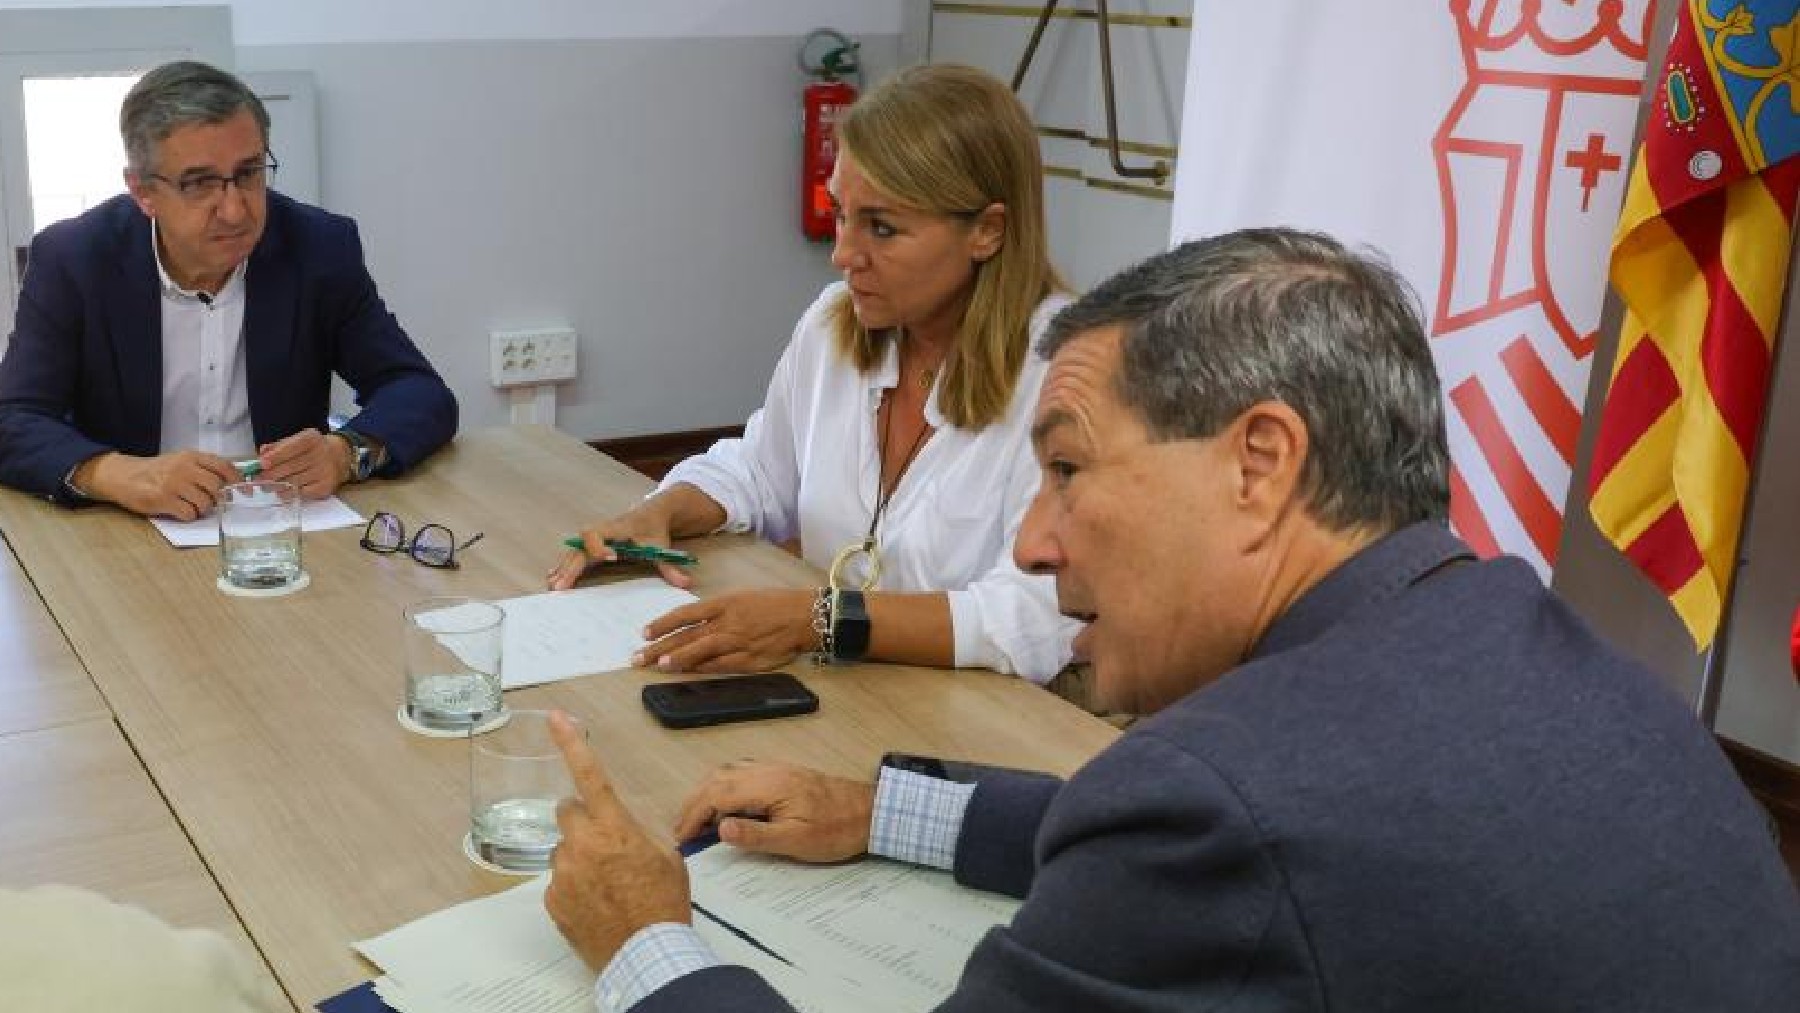 La vicepresidenta segunda del Gobierno valenciano Susana Camarero con los consejeros de Educación y Sanidad José Antonio Rovira y Marciano Gómez, este martes, en Valencia.